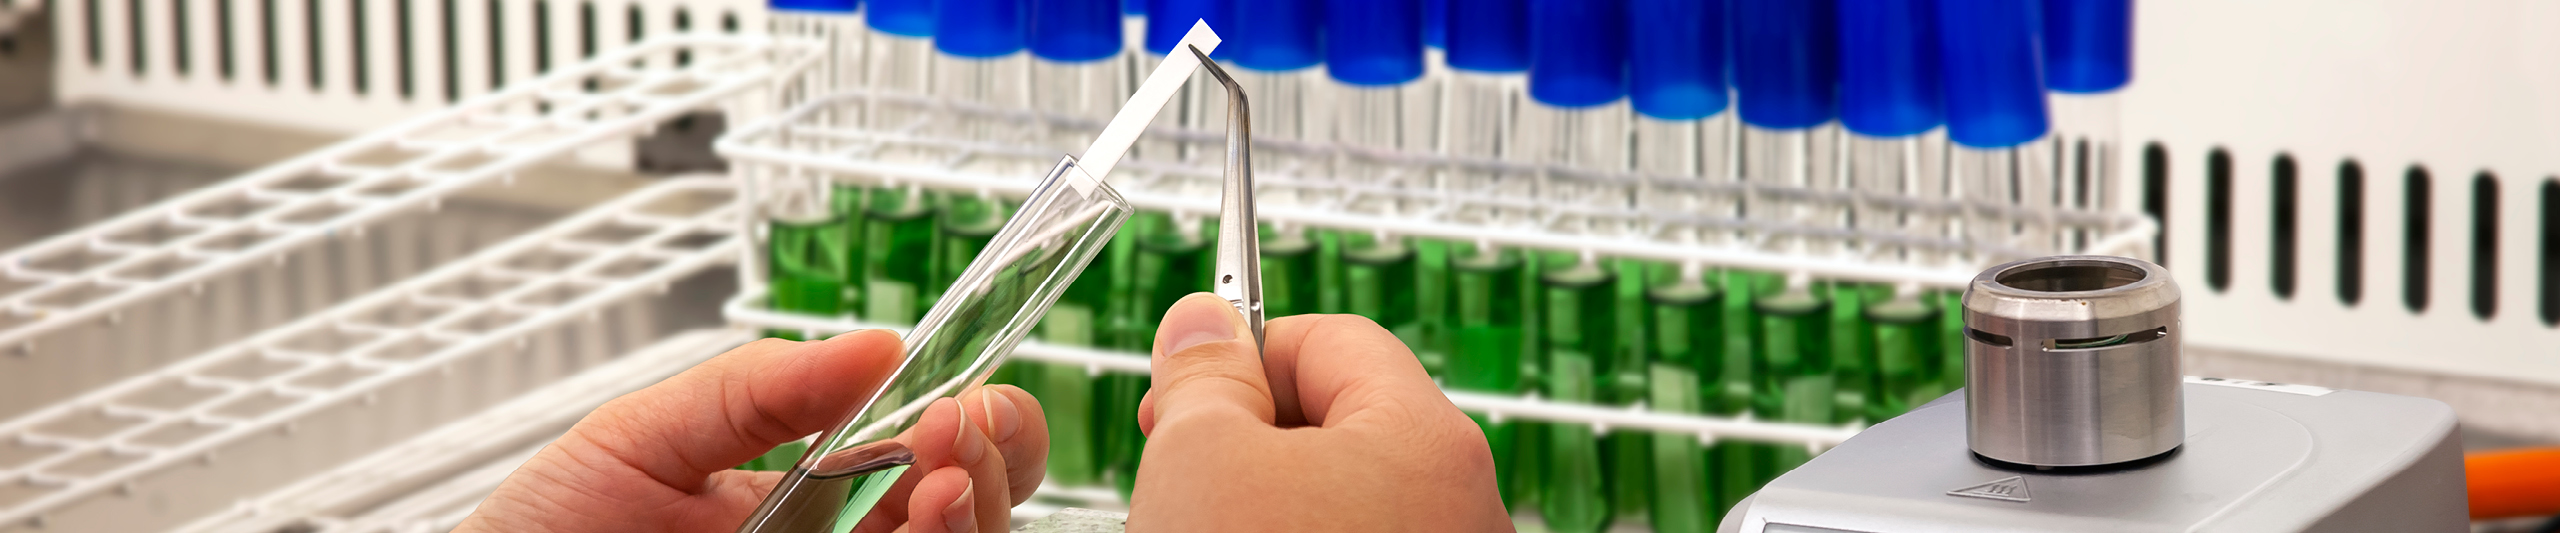 Reagensglas med grøn væske og blå hætter til bakteriesporing via en biologisk indikator. Trin et vises hvor den biologiske indikator indføres i reagensglasset.